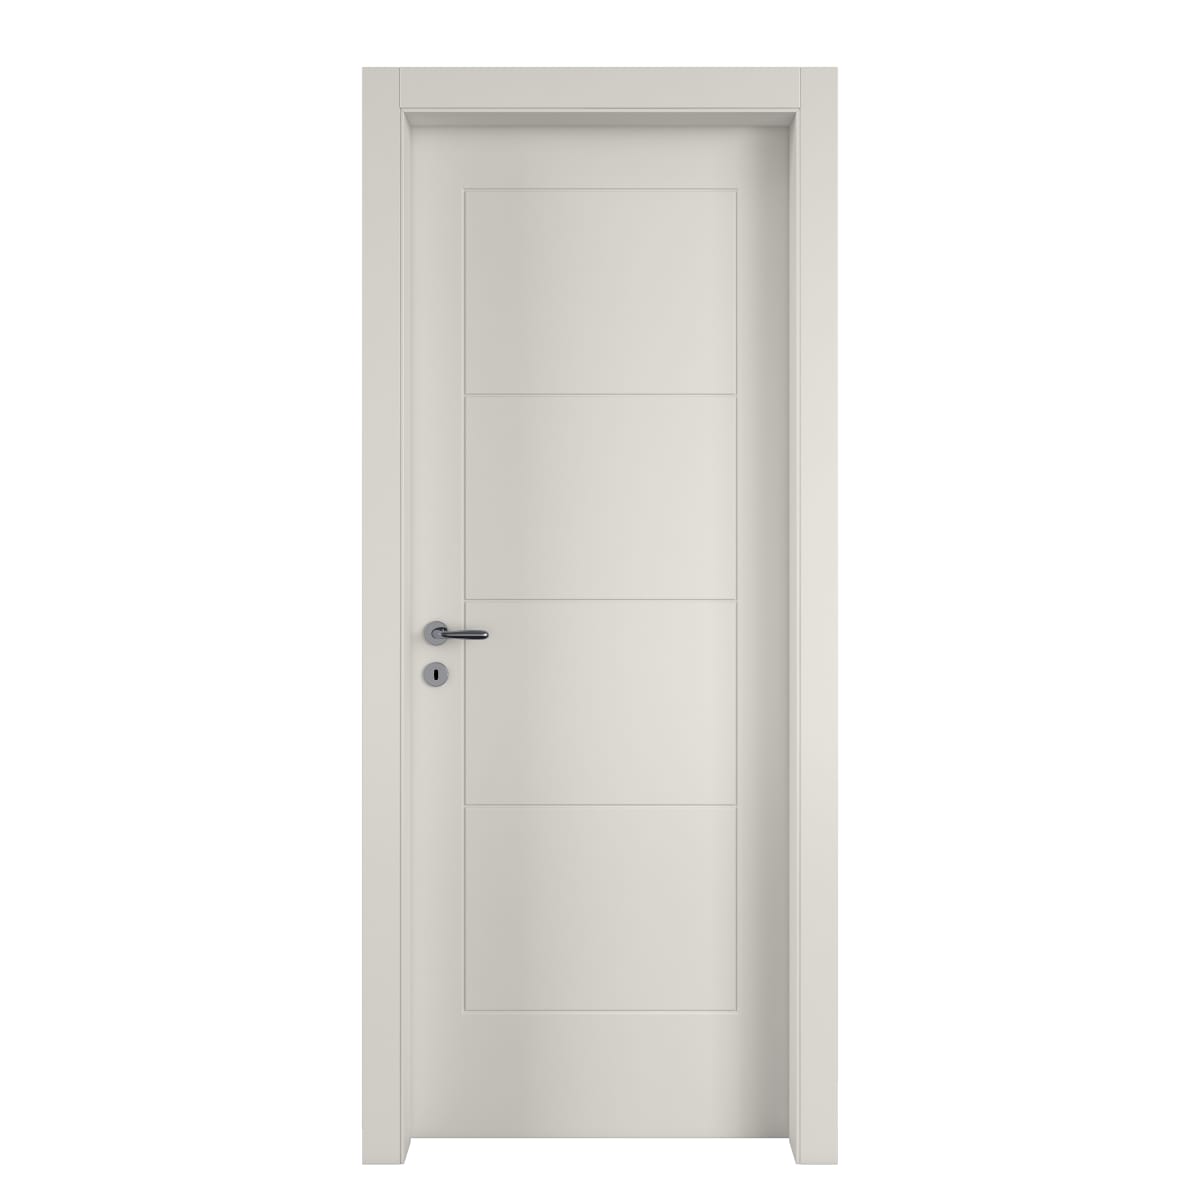 WHITE RIBERA DOOR 80X210 RIGHT